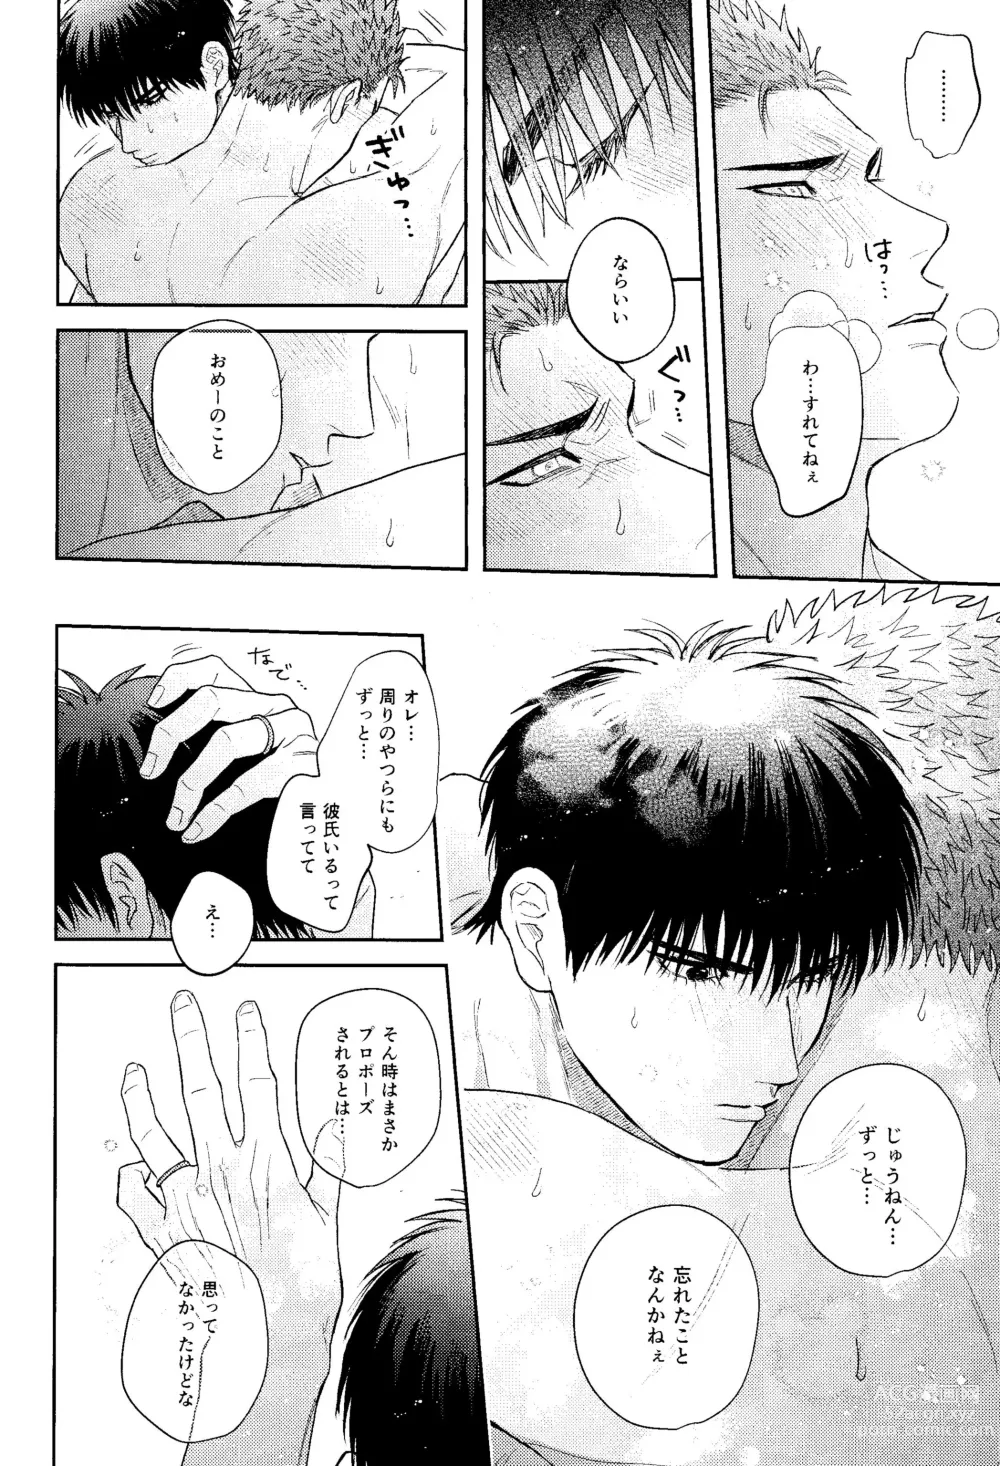 Page 24 of doujinshi Motto Motto Aishitai